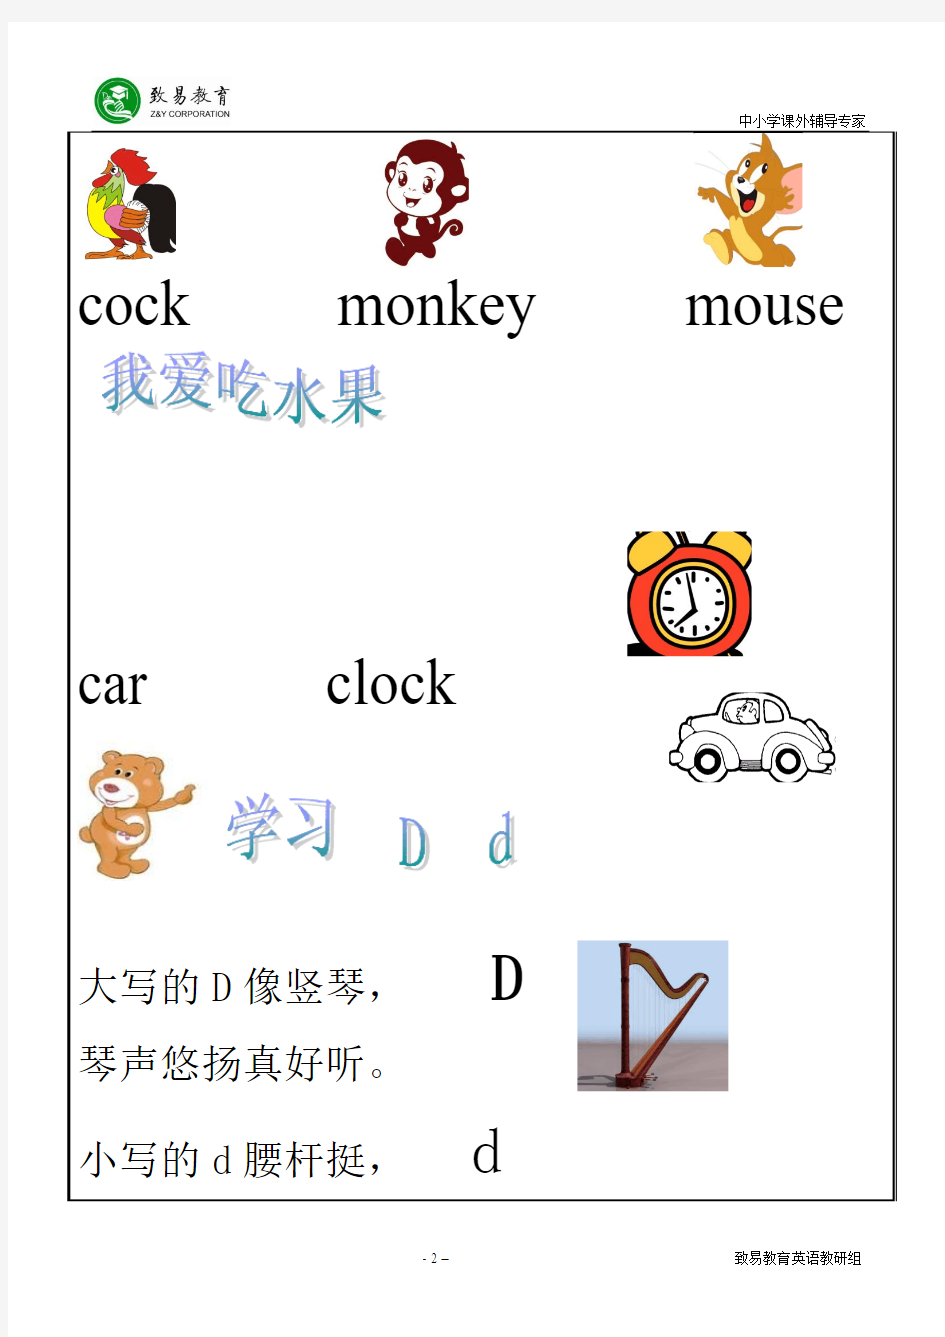 幼儿园大班英语学习讲义：字母学习,礼貌用语,动物学习